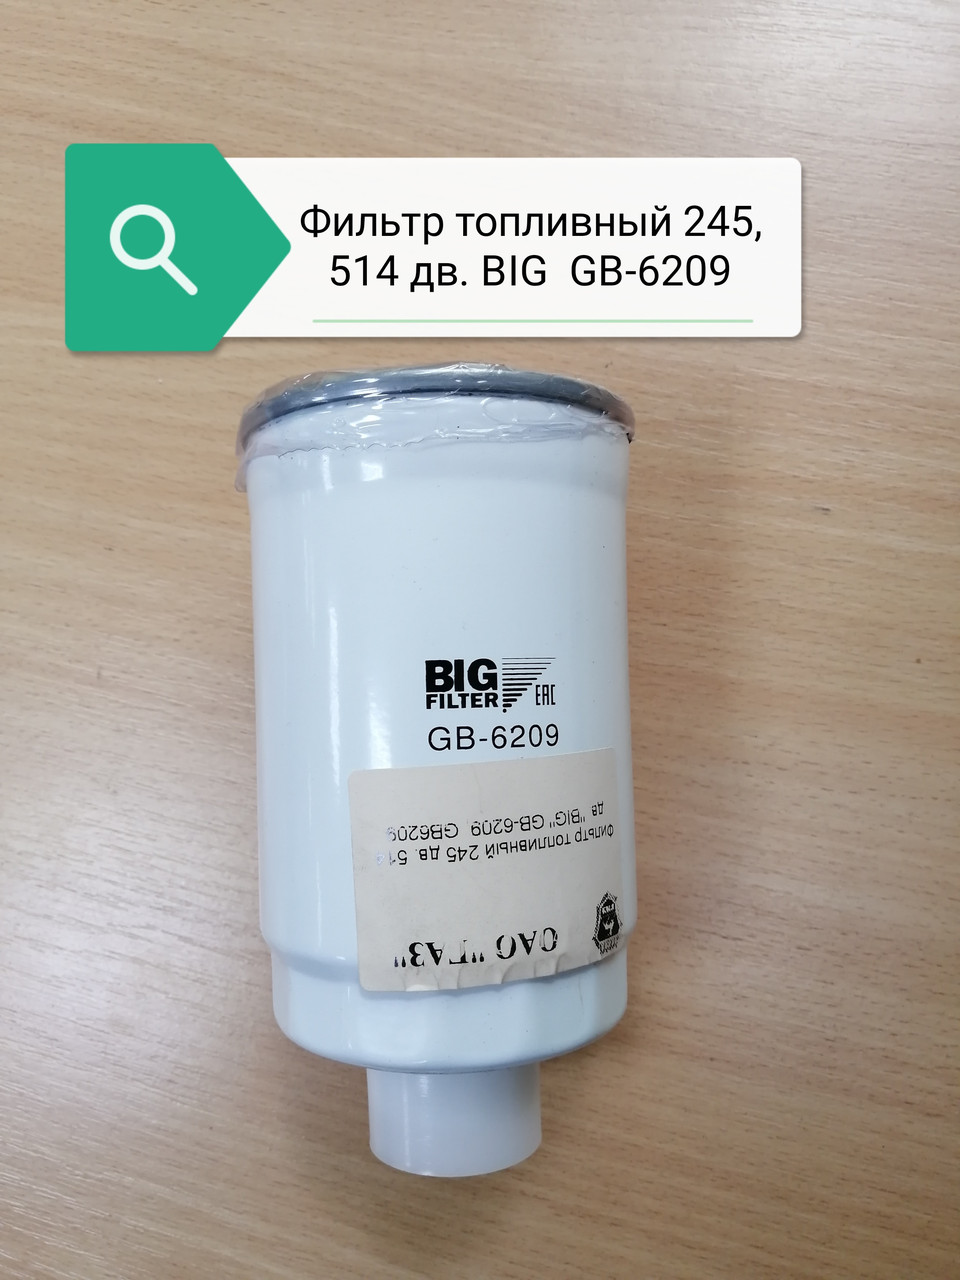 Фильтр топливный 245 дв. 514 дв. "BIG" GB-6209, GB6209